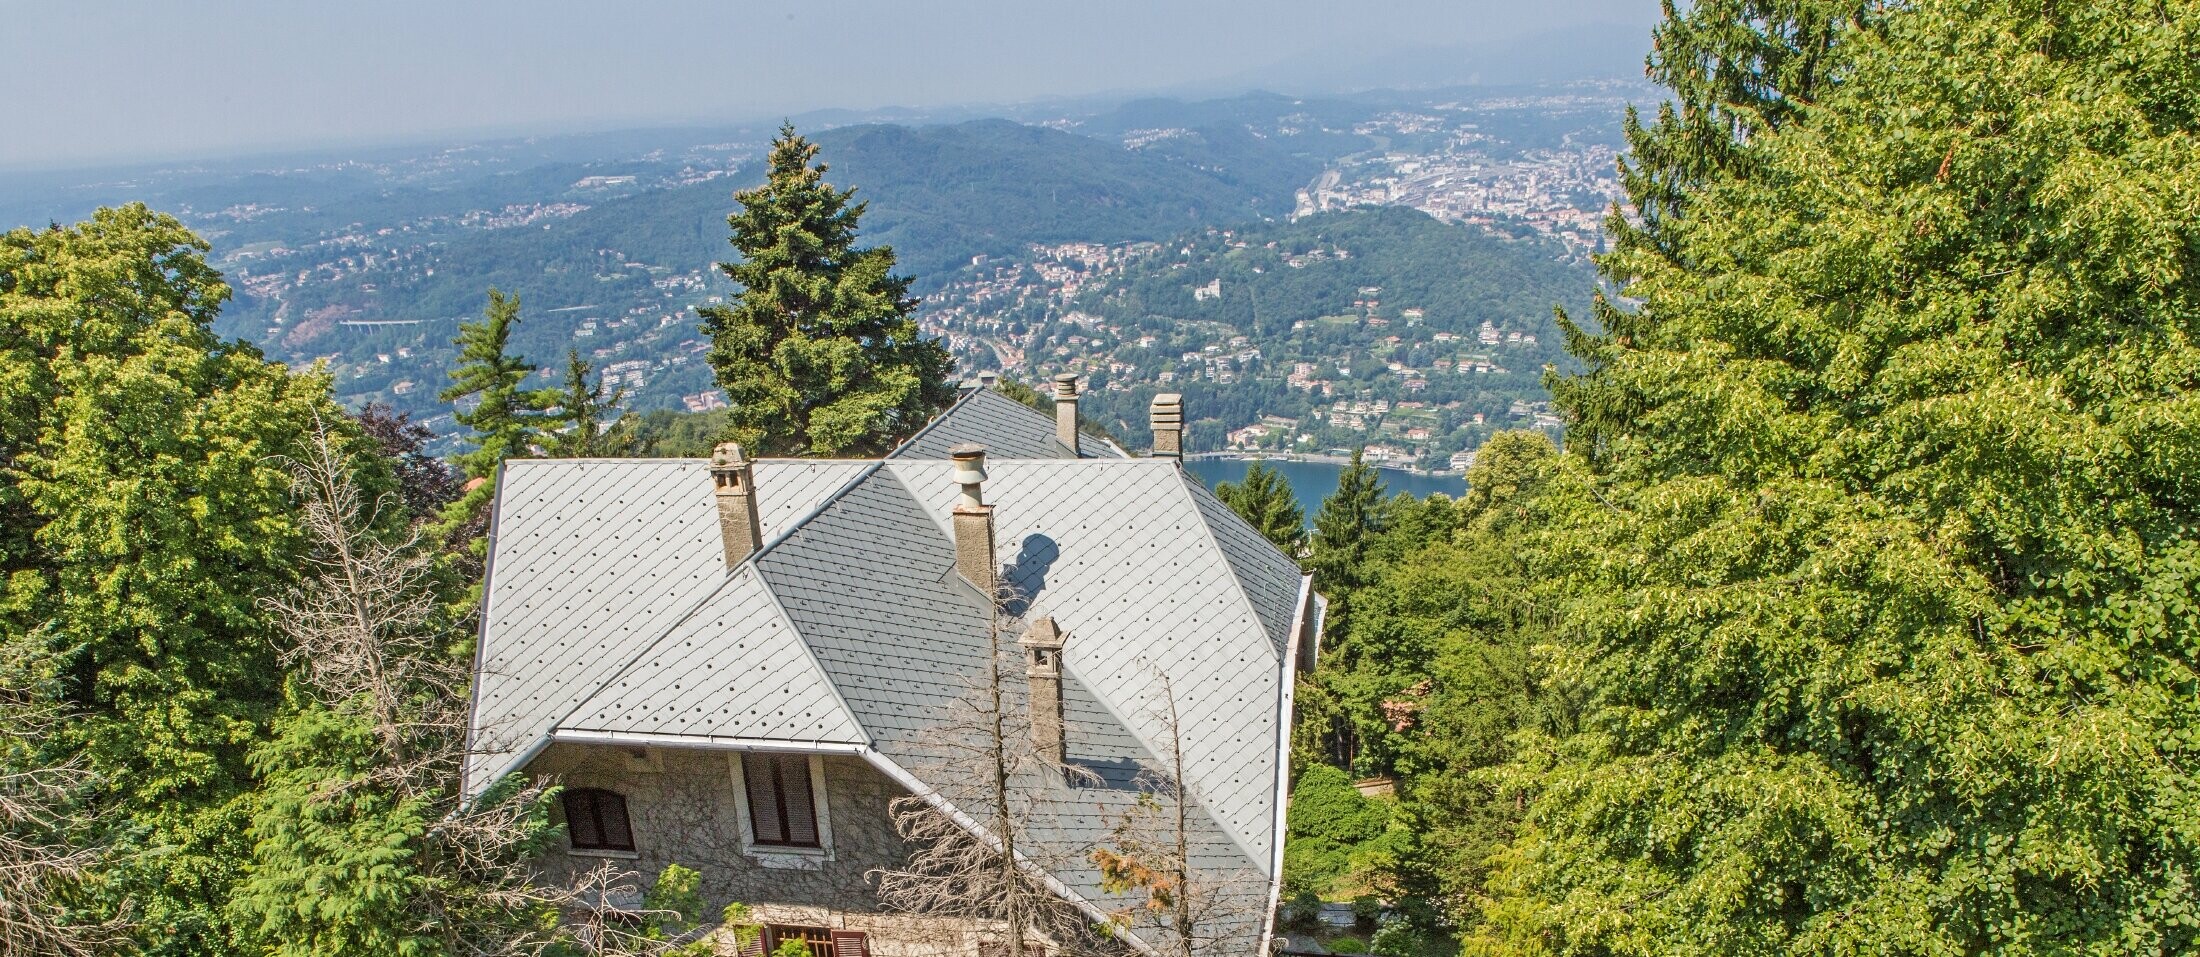 Vogelperspektive der Villa Brunate mit einem robusten Dach, das mit der Dachraute 29 × 29 in P.10 Hellgrau eingedecktist